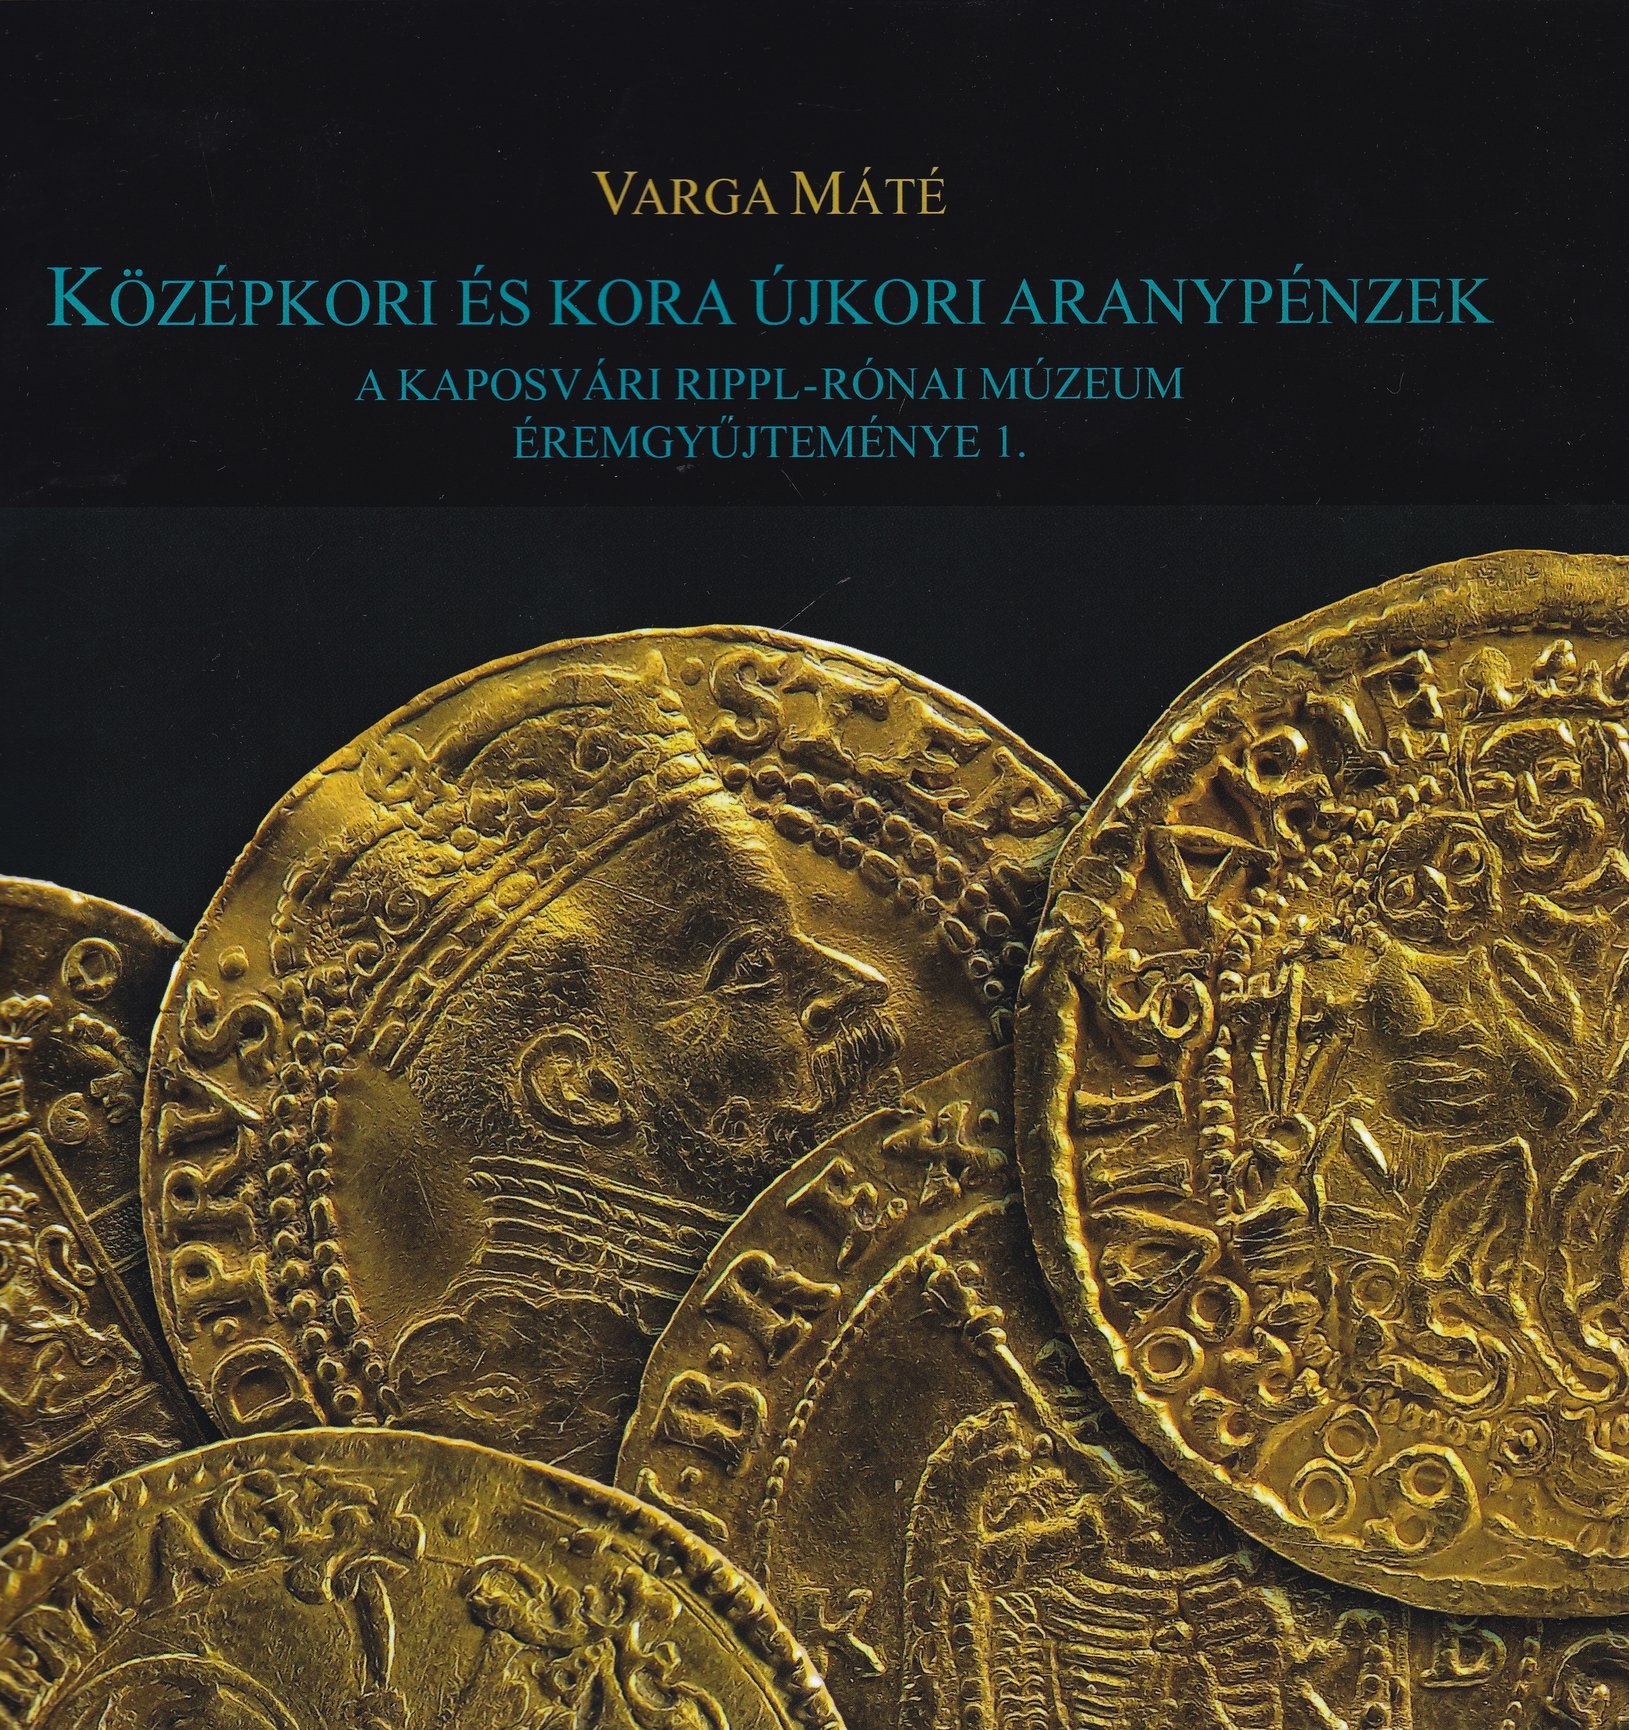 A Kaposvári Rippl-Rónai Múzeum éremgyűjteménye 1. - Varga Máté: Középkori és kora újkori aranypénzek (Rippl-Rónai Múzeum CC BY-NC-ND)